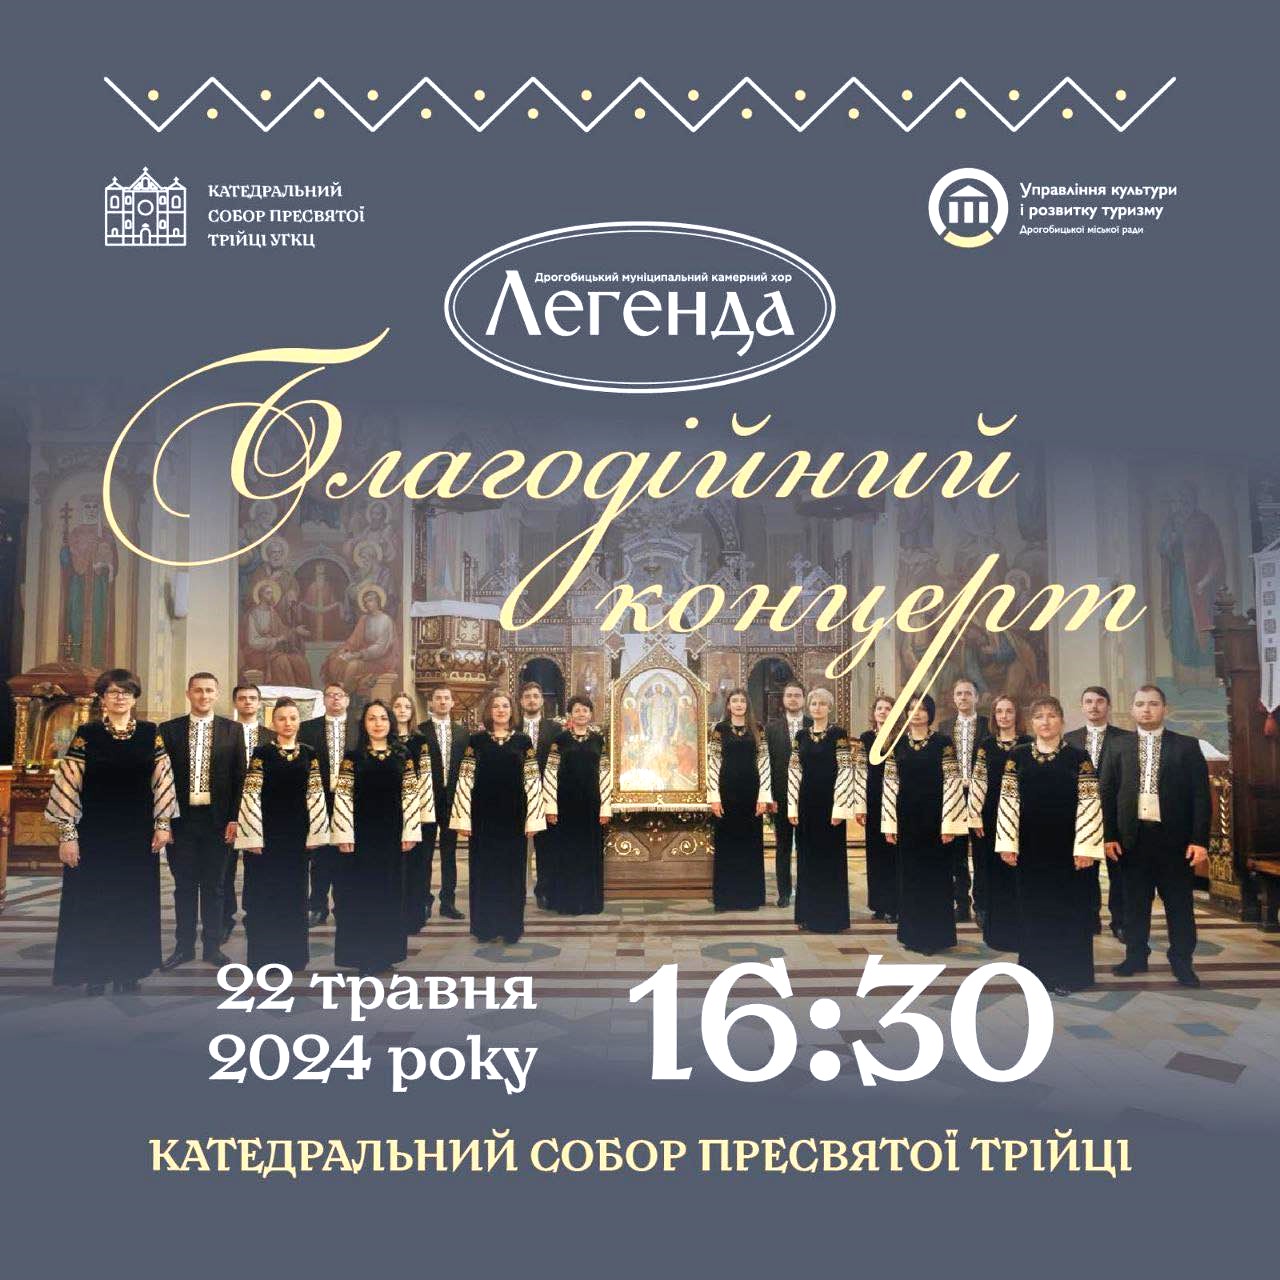 Дрогобицький Муніципальний камерний хор «Легенда» заспіває у соборі Пресвятої Трійці